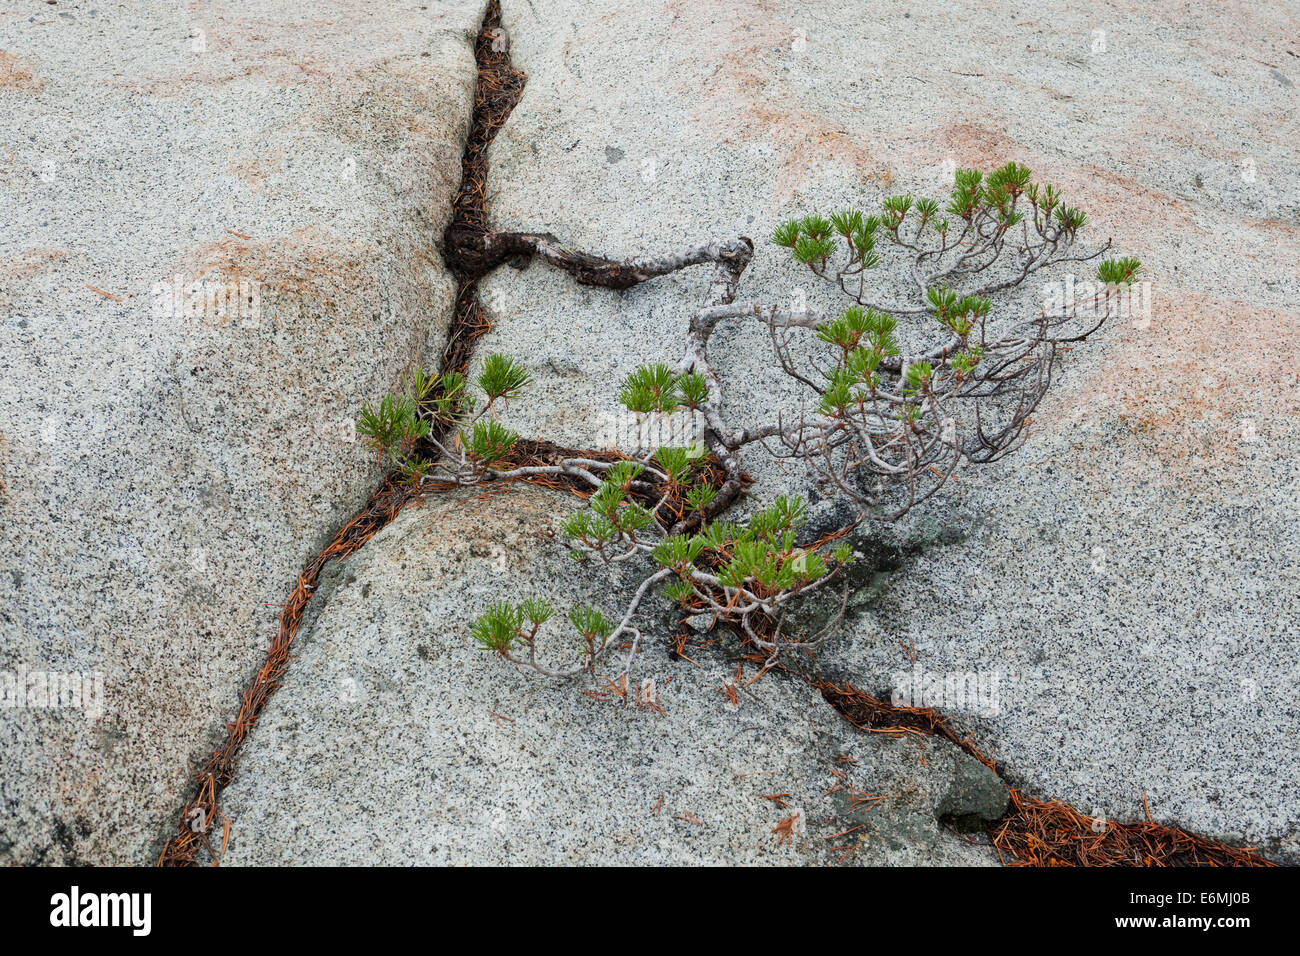 Junge Ponderosa Pine (Pinus ponderosa), die in einem Felsriss wächst, in der Sierra Nevada Bergkette - Kalifornien USA Stockfoto